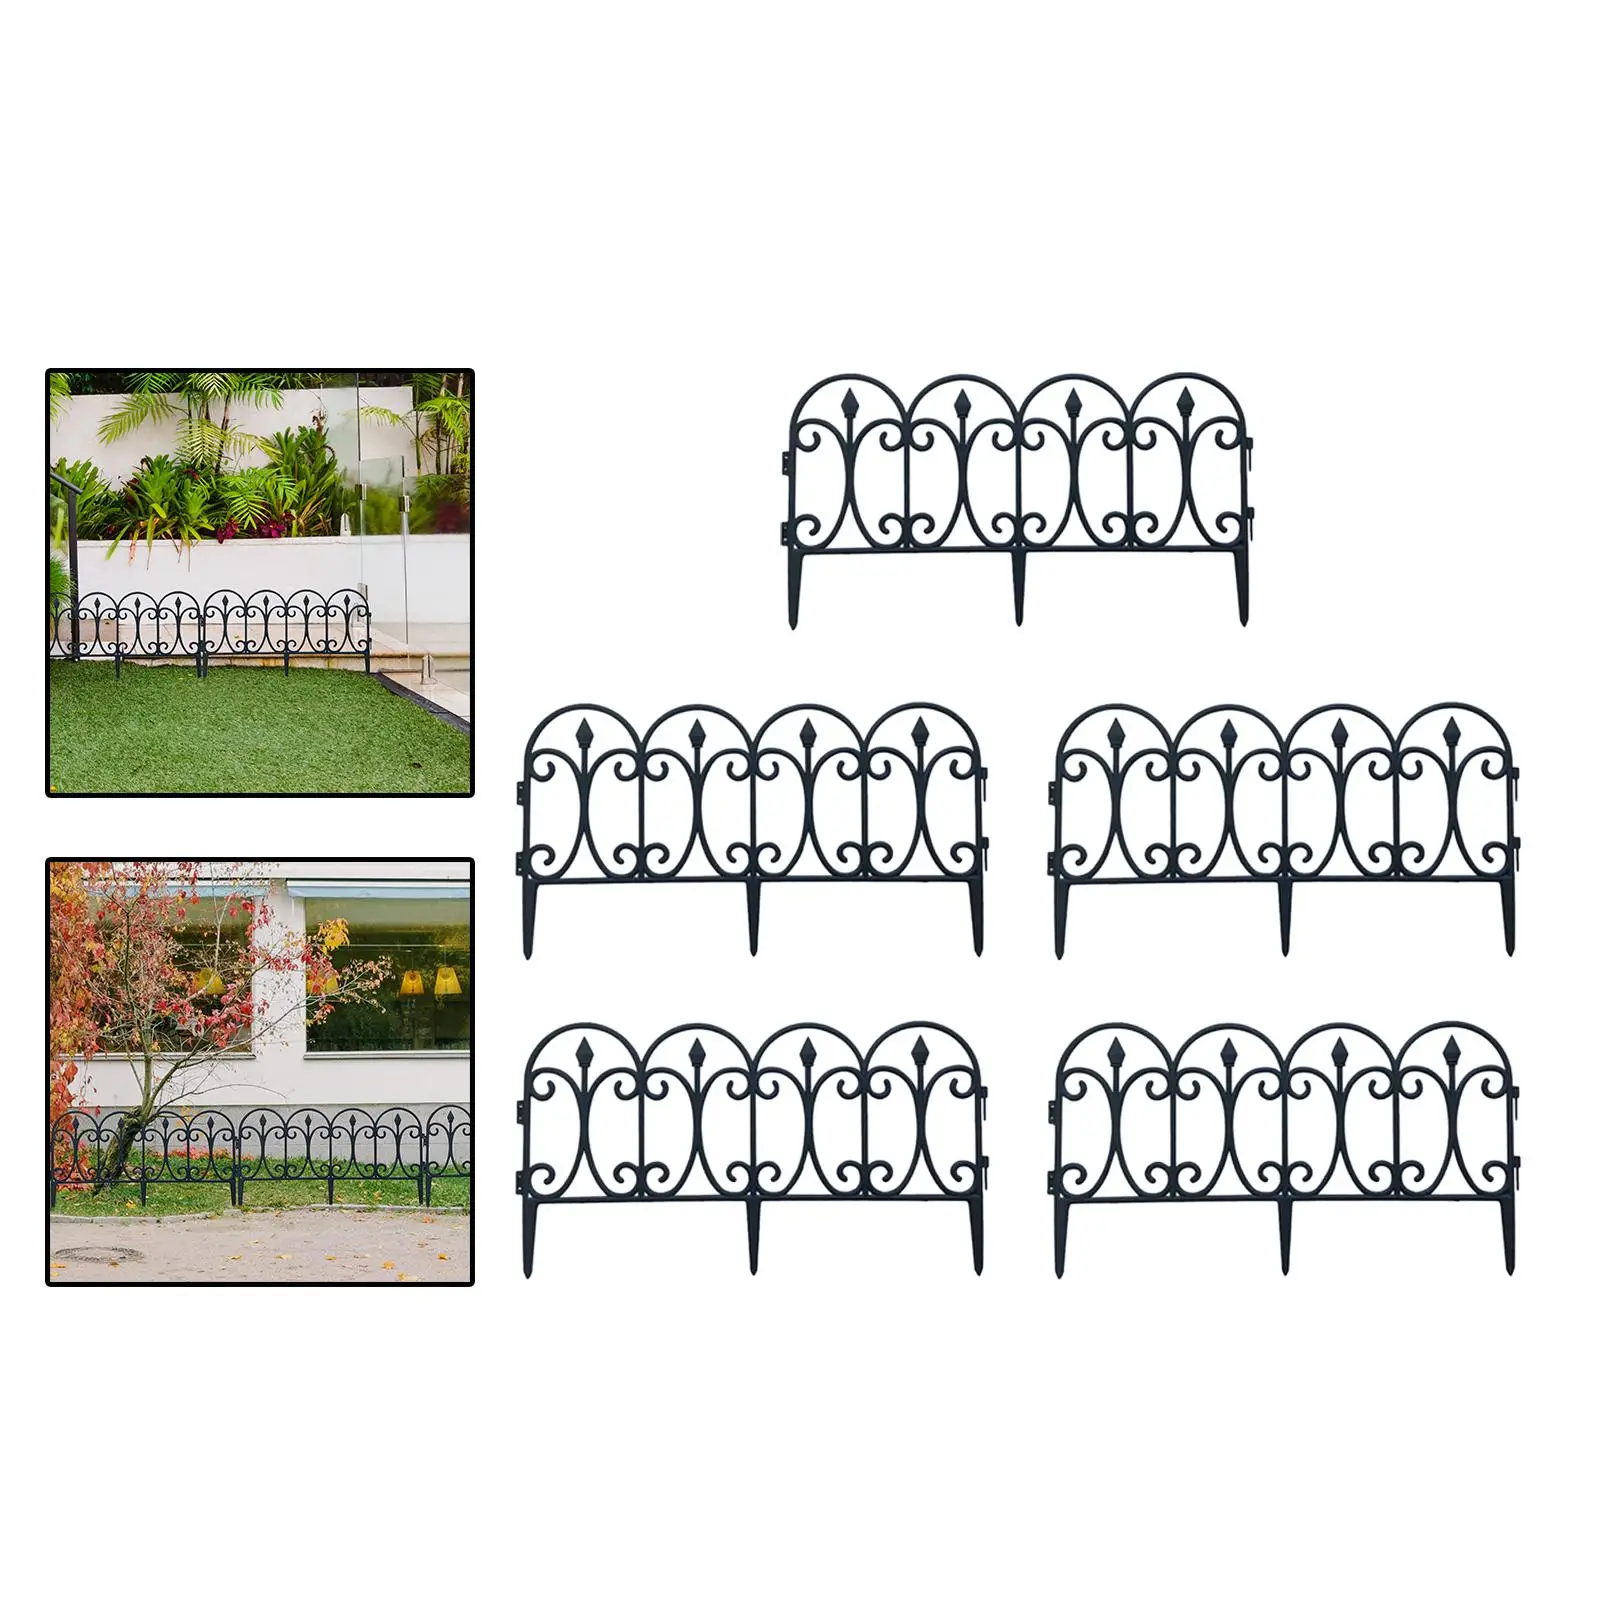 Artificial Garden Fence Ground Insert Flower Bed Lawn Plant Edging Interlock